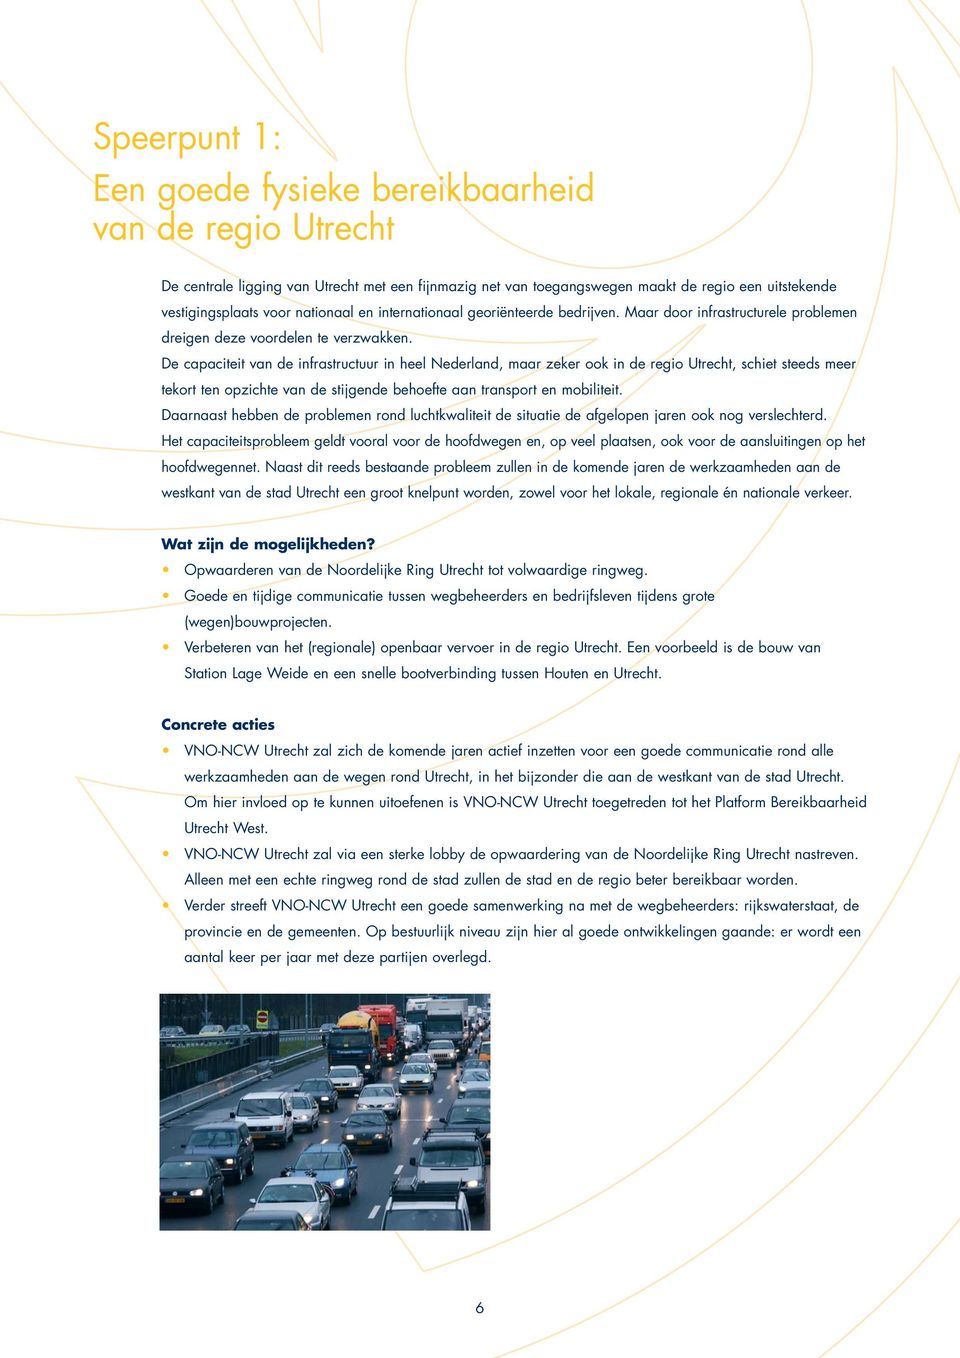 De capaciteit van de infrastructuur in heel Nederland, maar zeker ook in de regio Utrecht, schiet steeds meer tekort ten opzichte van de stijgende behoefte aan transport en mobiliteit.